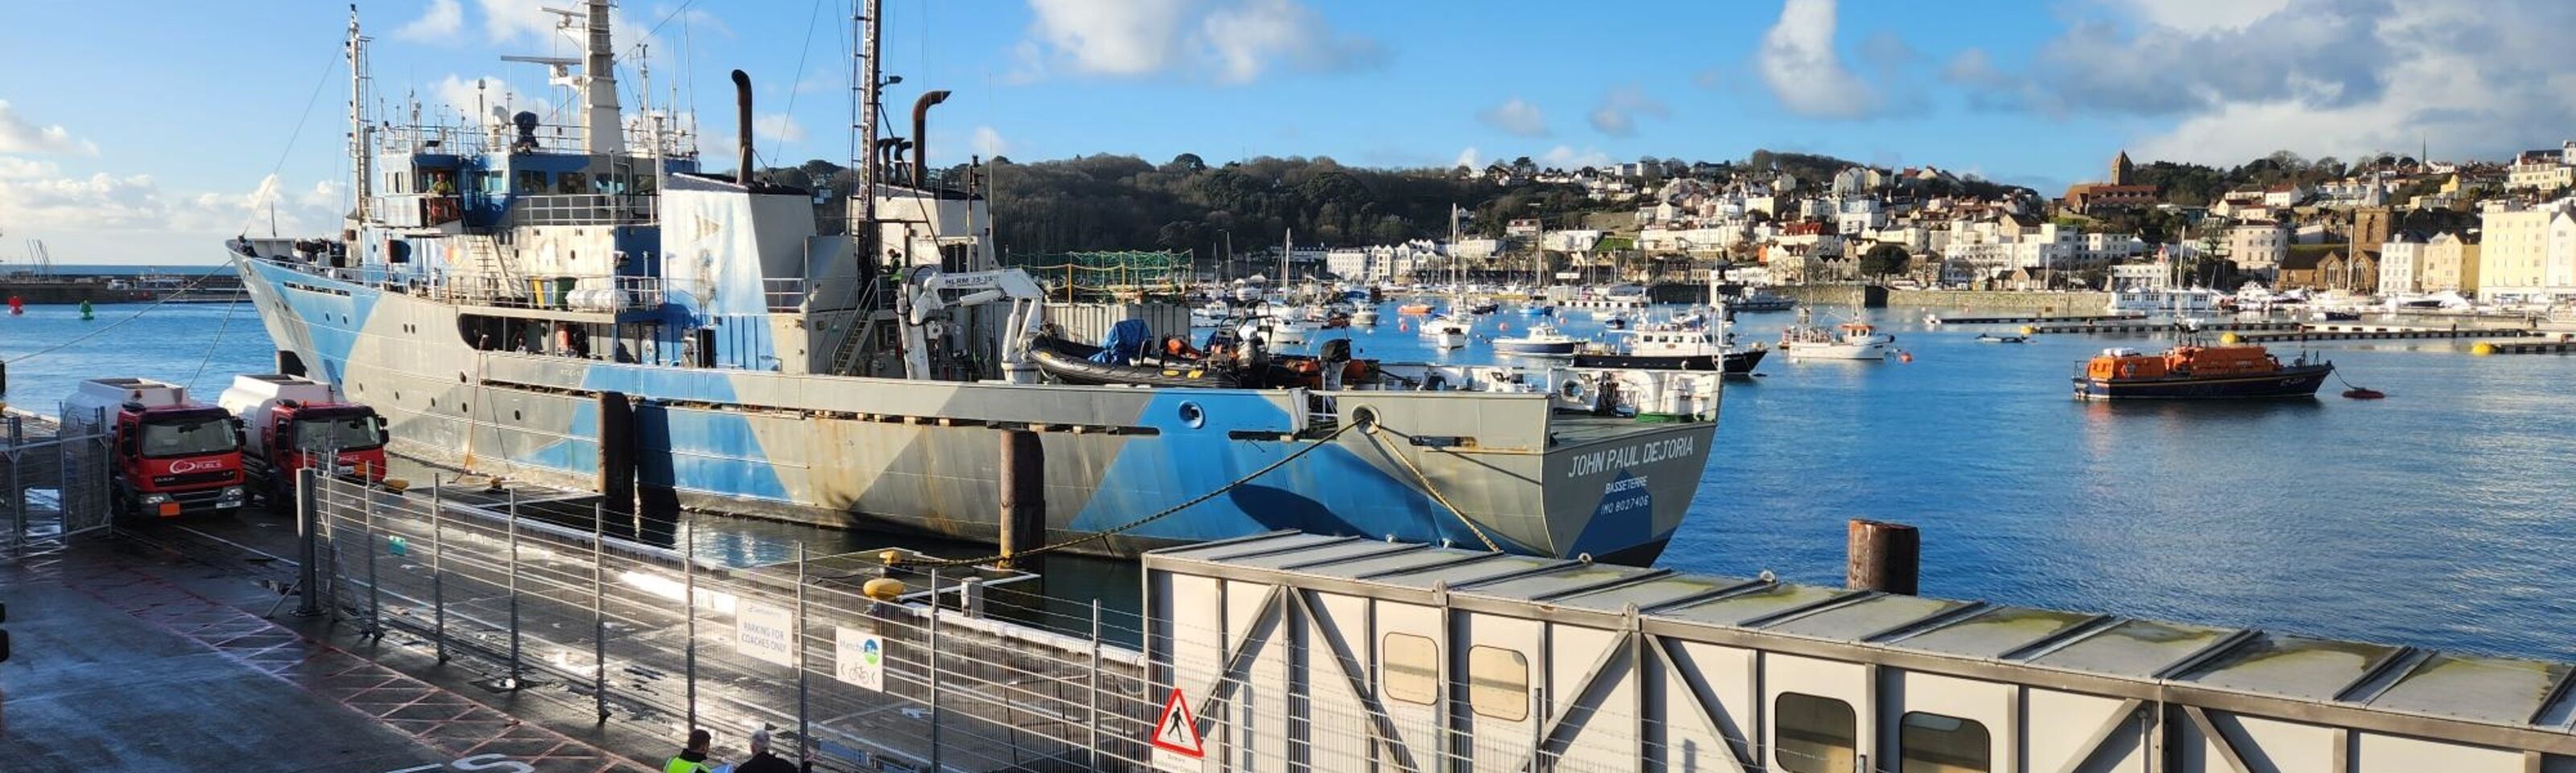 Marine Conservation Vessel Refuels in Guernsey